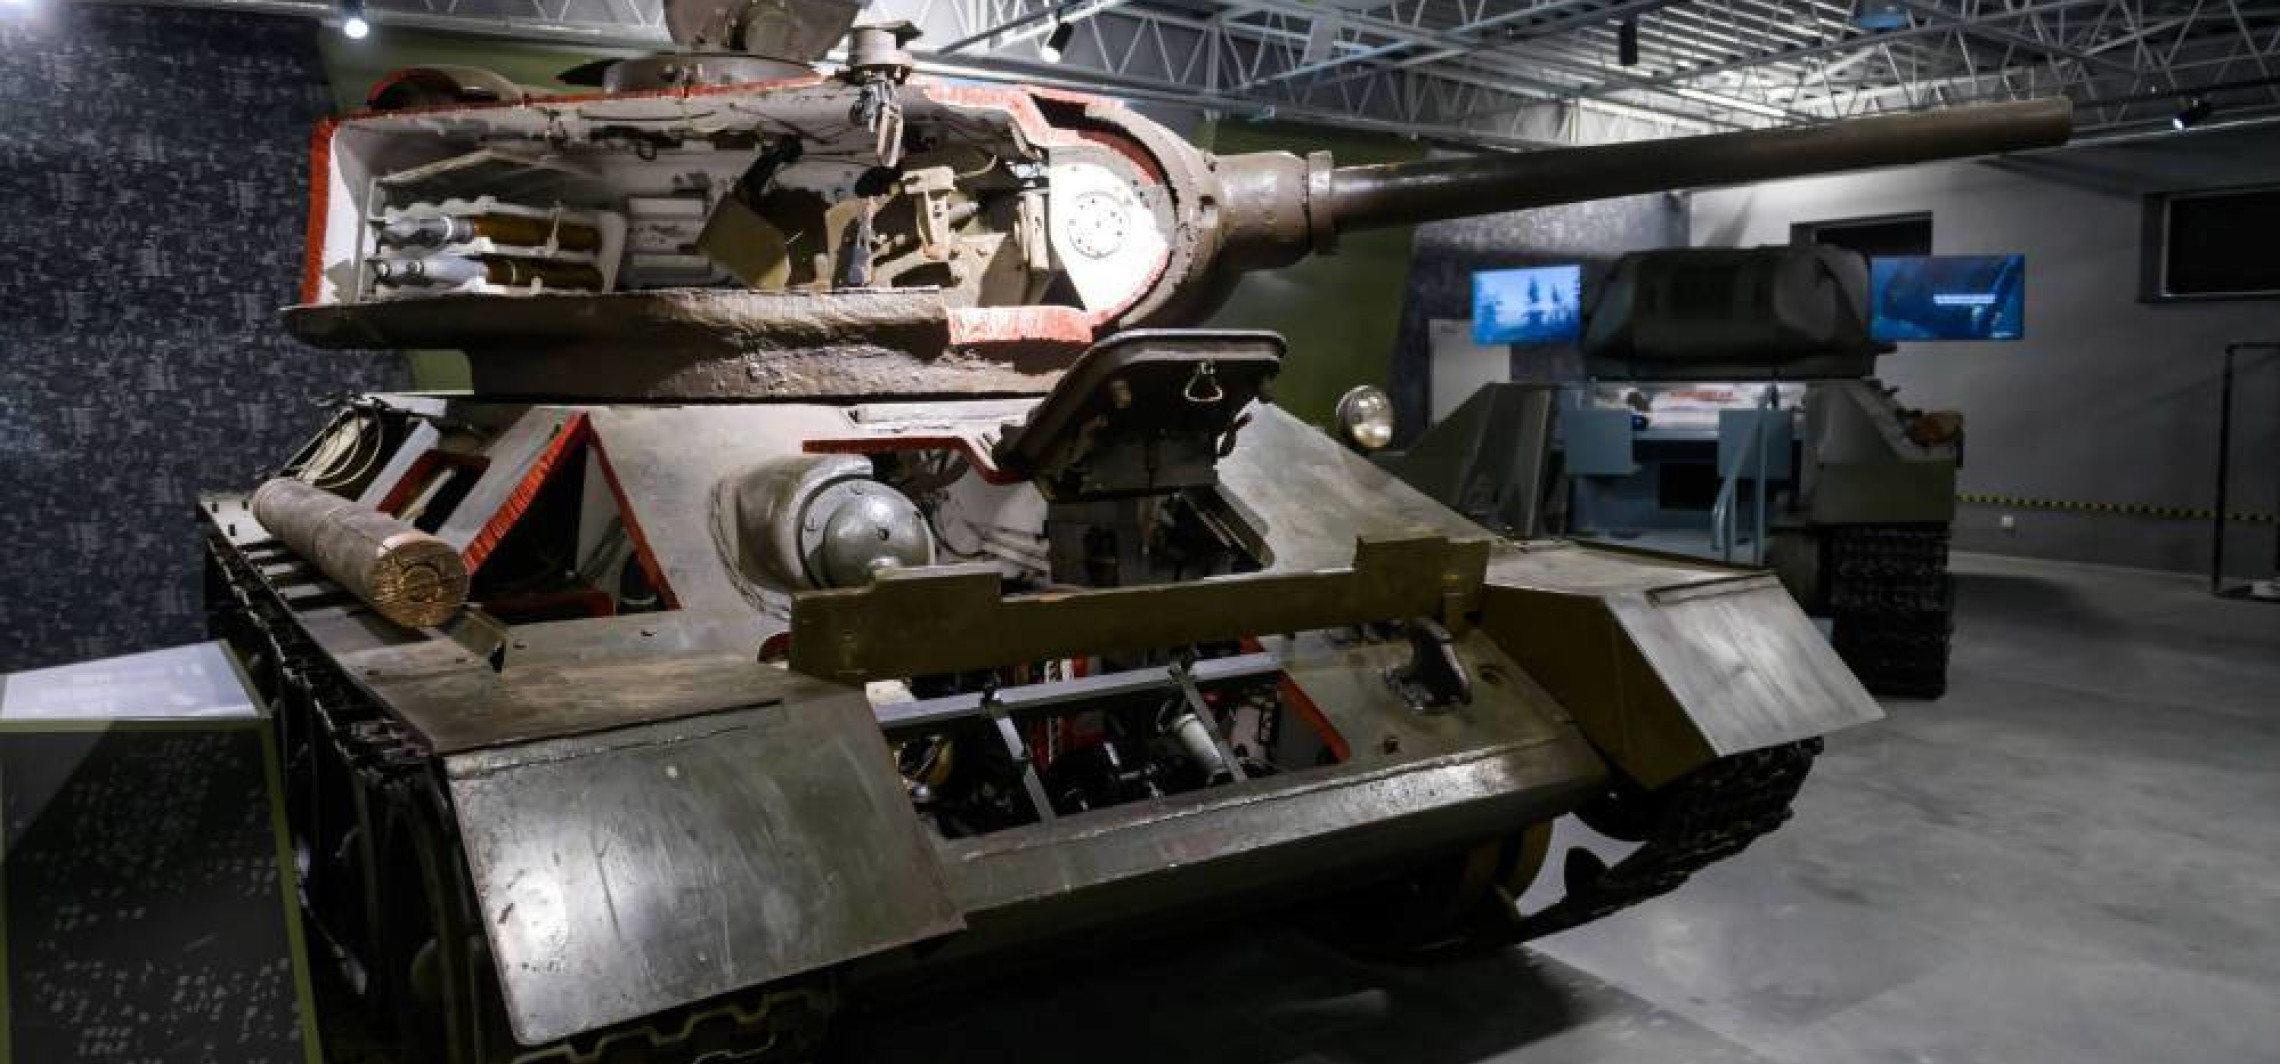 Specjalny pokaz czołgu "Rudy" w Muzeum Broni Pancernej w Poznaniu